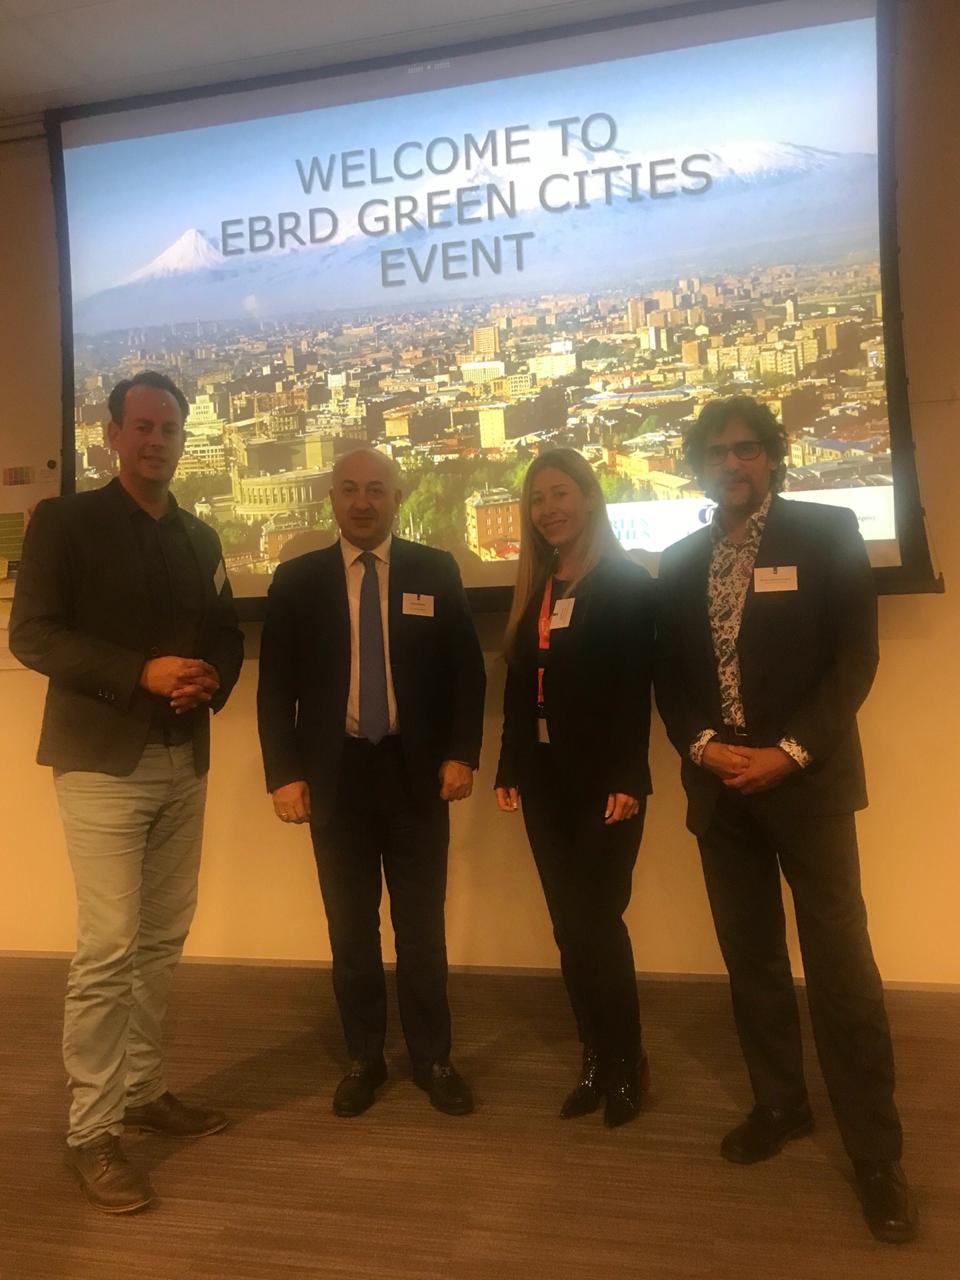 Evento de ciudades verdes, Seminario del Banco Europeo de Reconstrucción y Desarrollo, EBRD